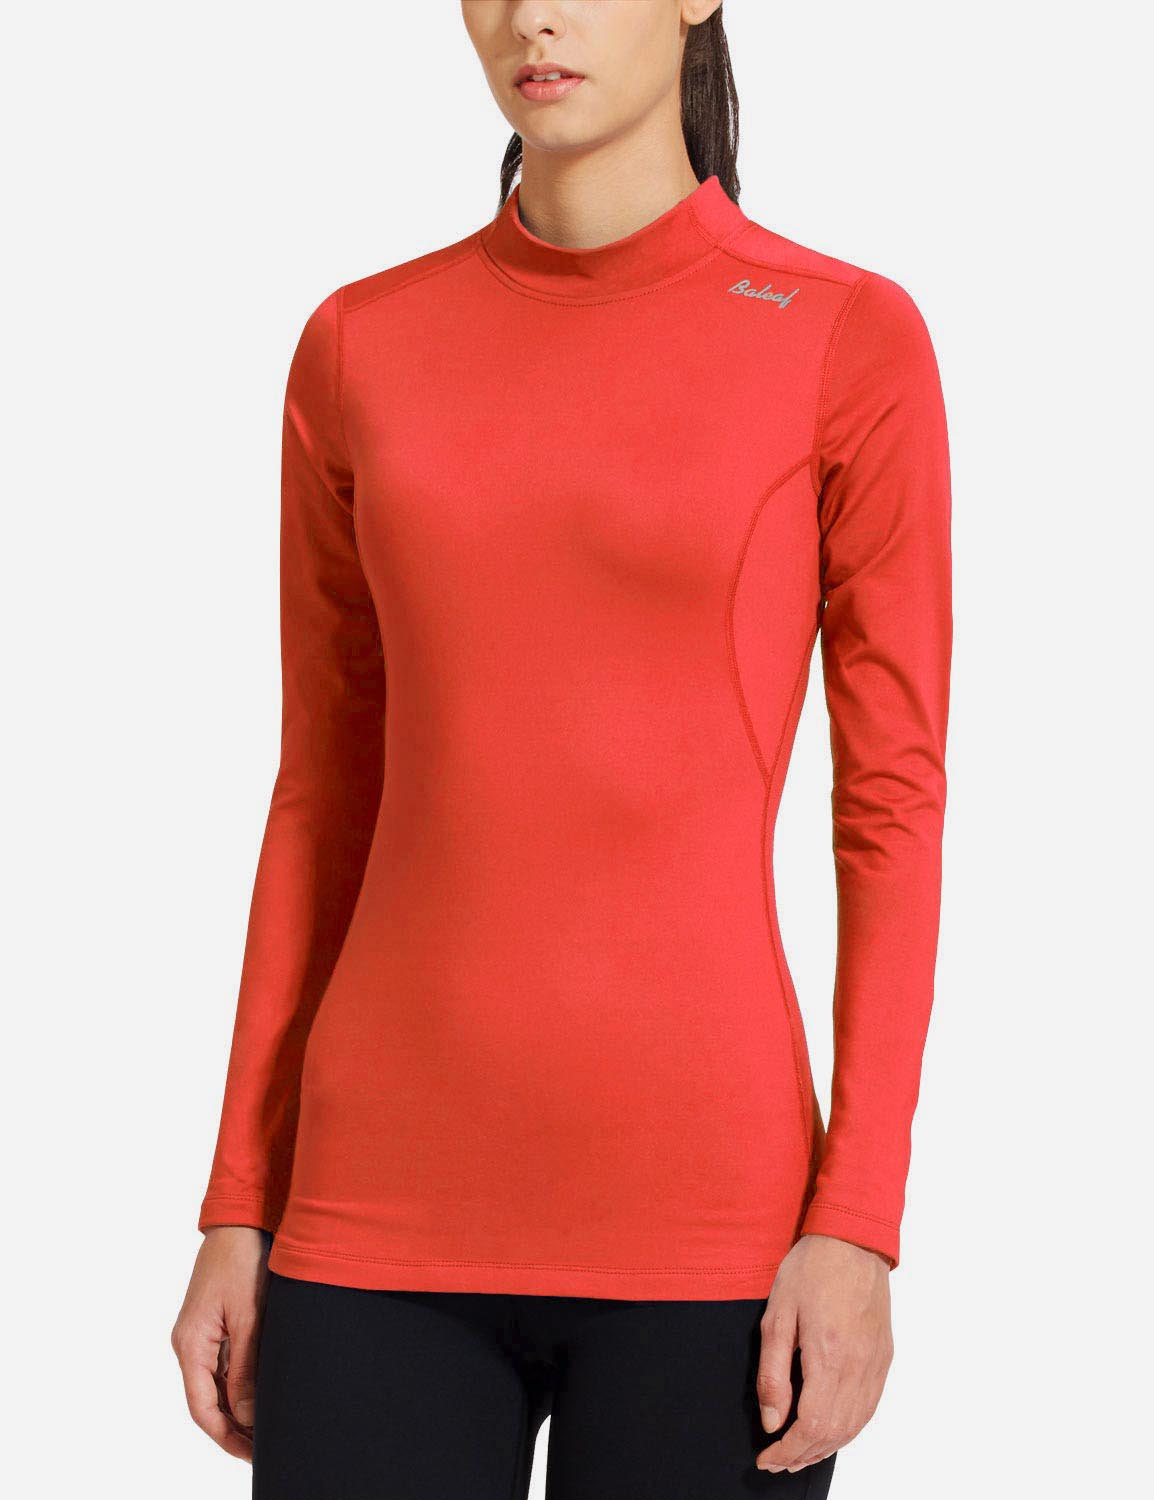 Baleaf Women's Thermal Fleece Tops Long Sleeve Running t-Shirt